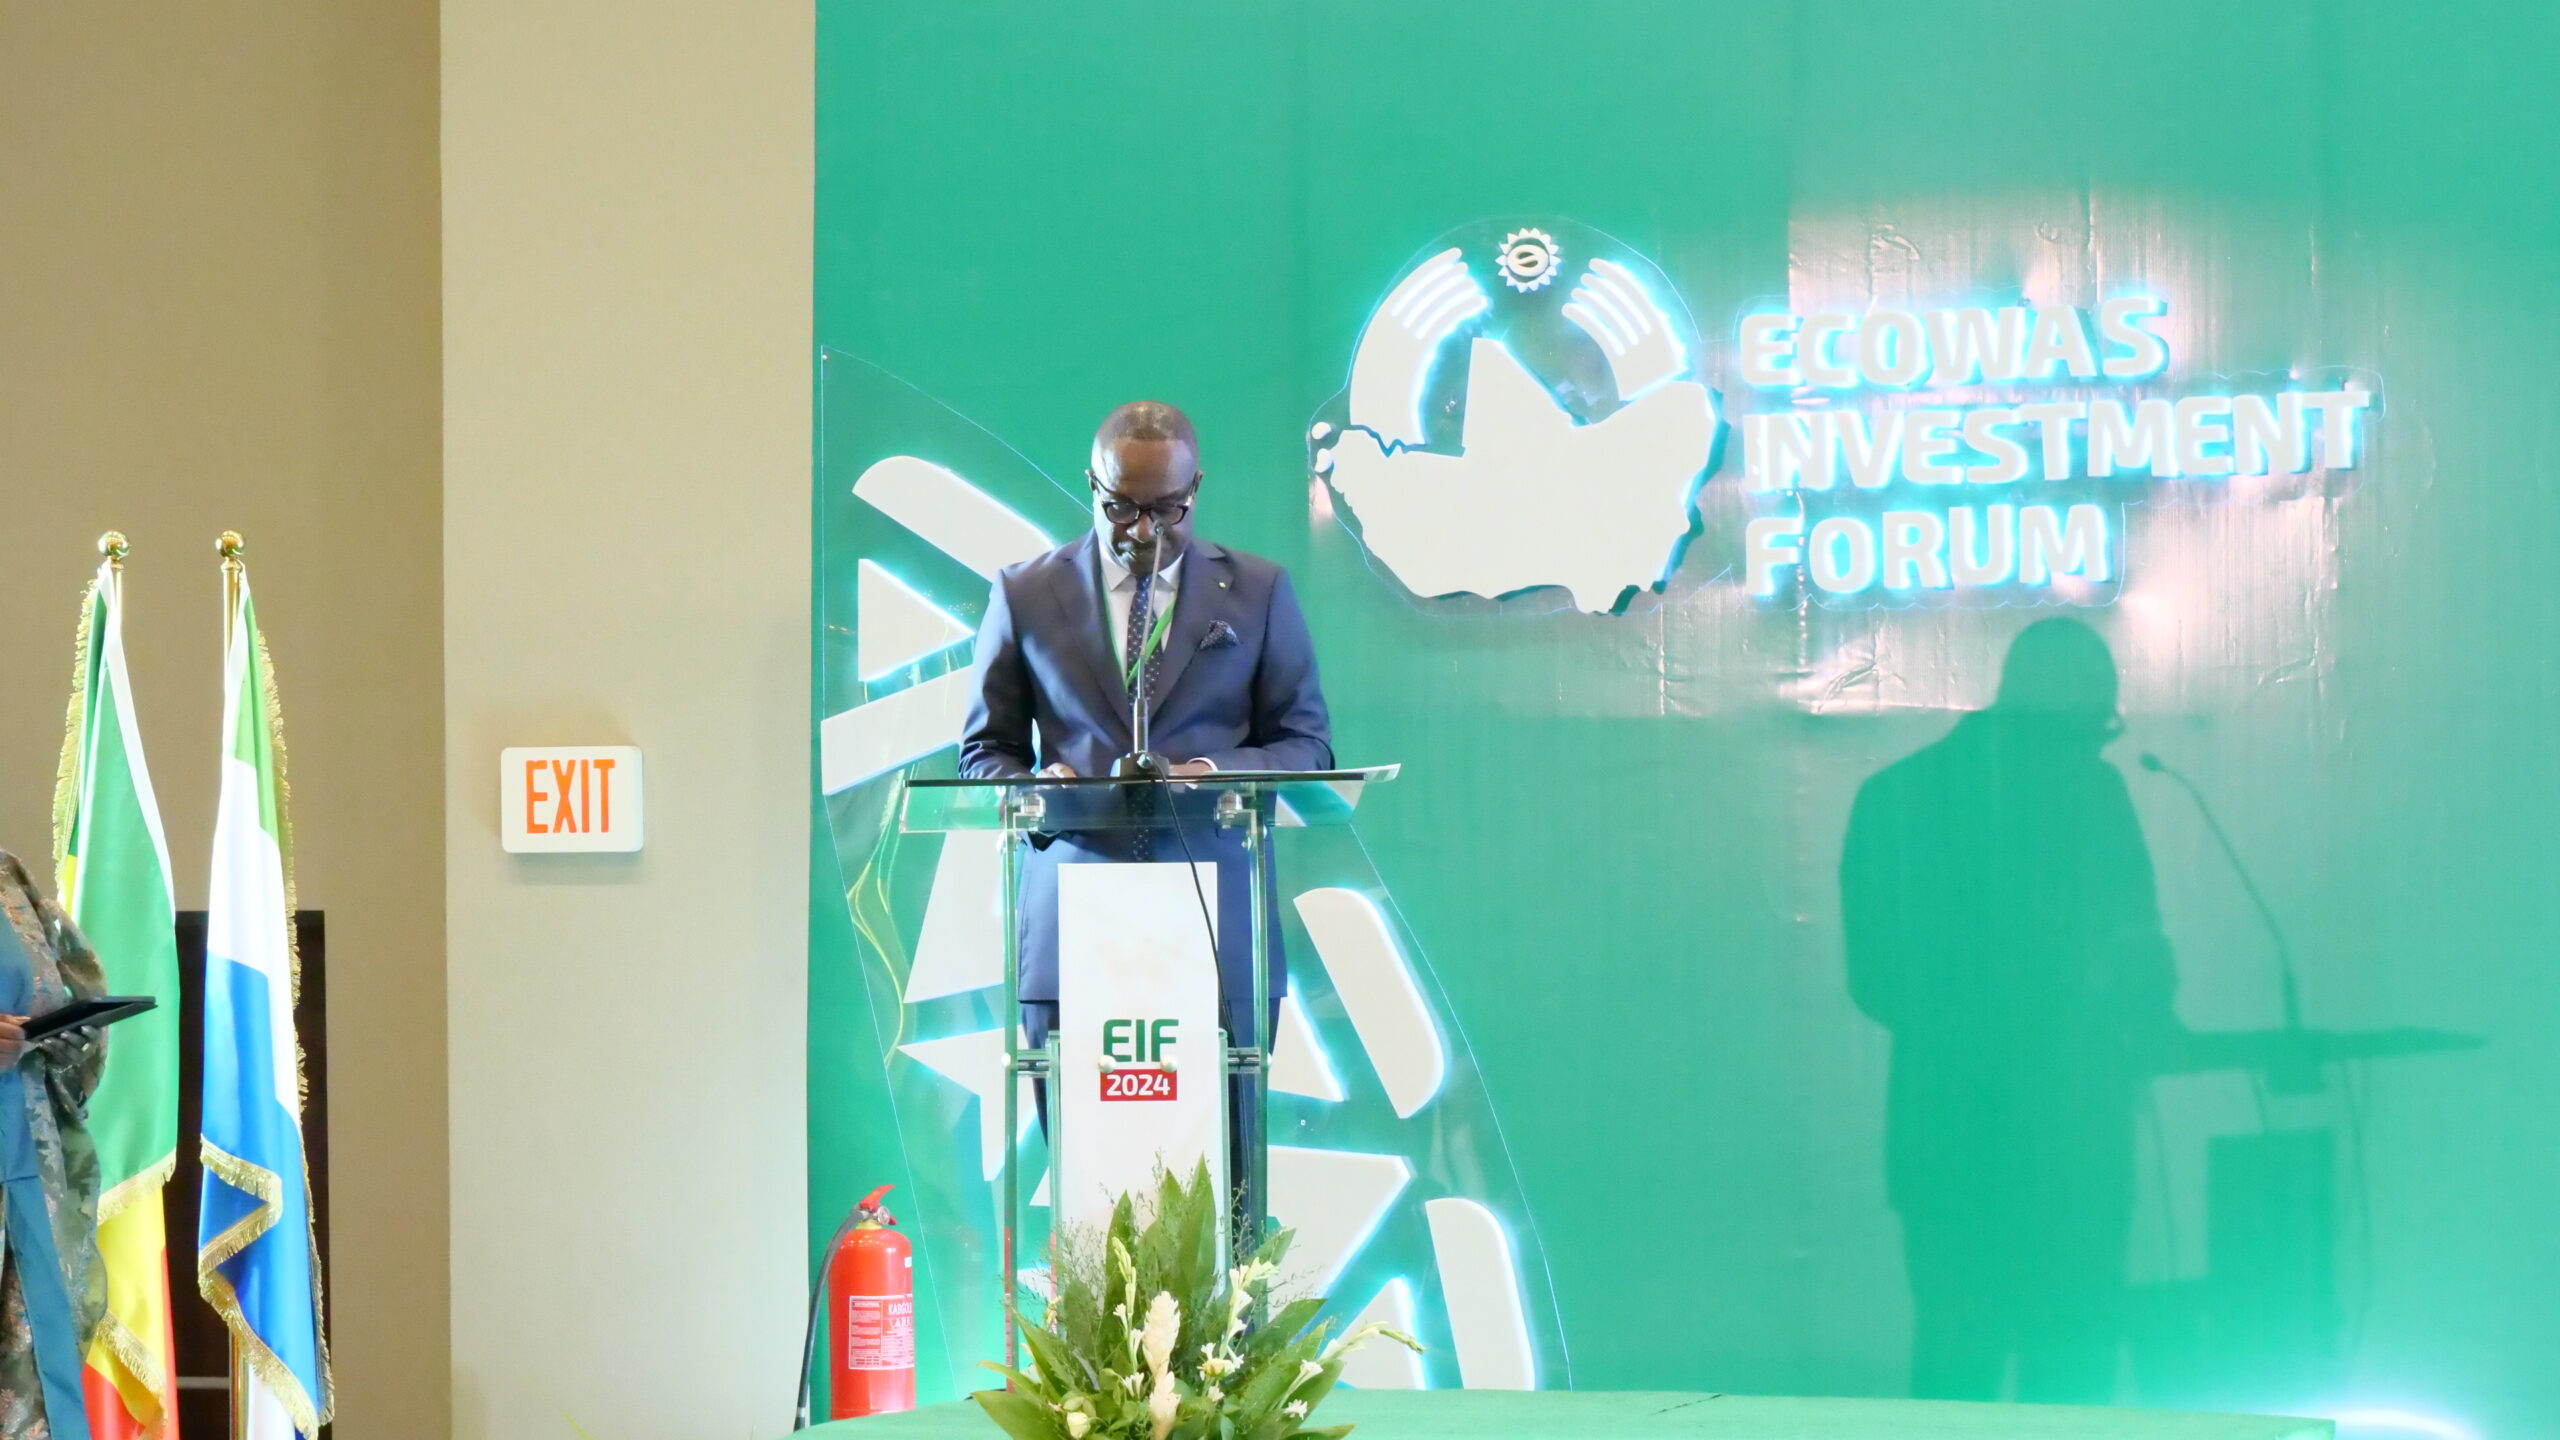 Un discours inaugural du Président de la BIDC mettant en lumière la collaboration et le développement durable au sein de la CEDEAO